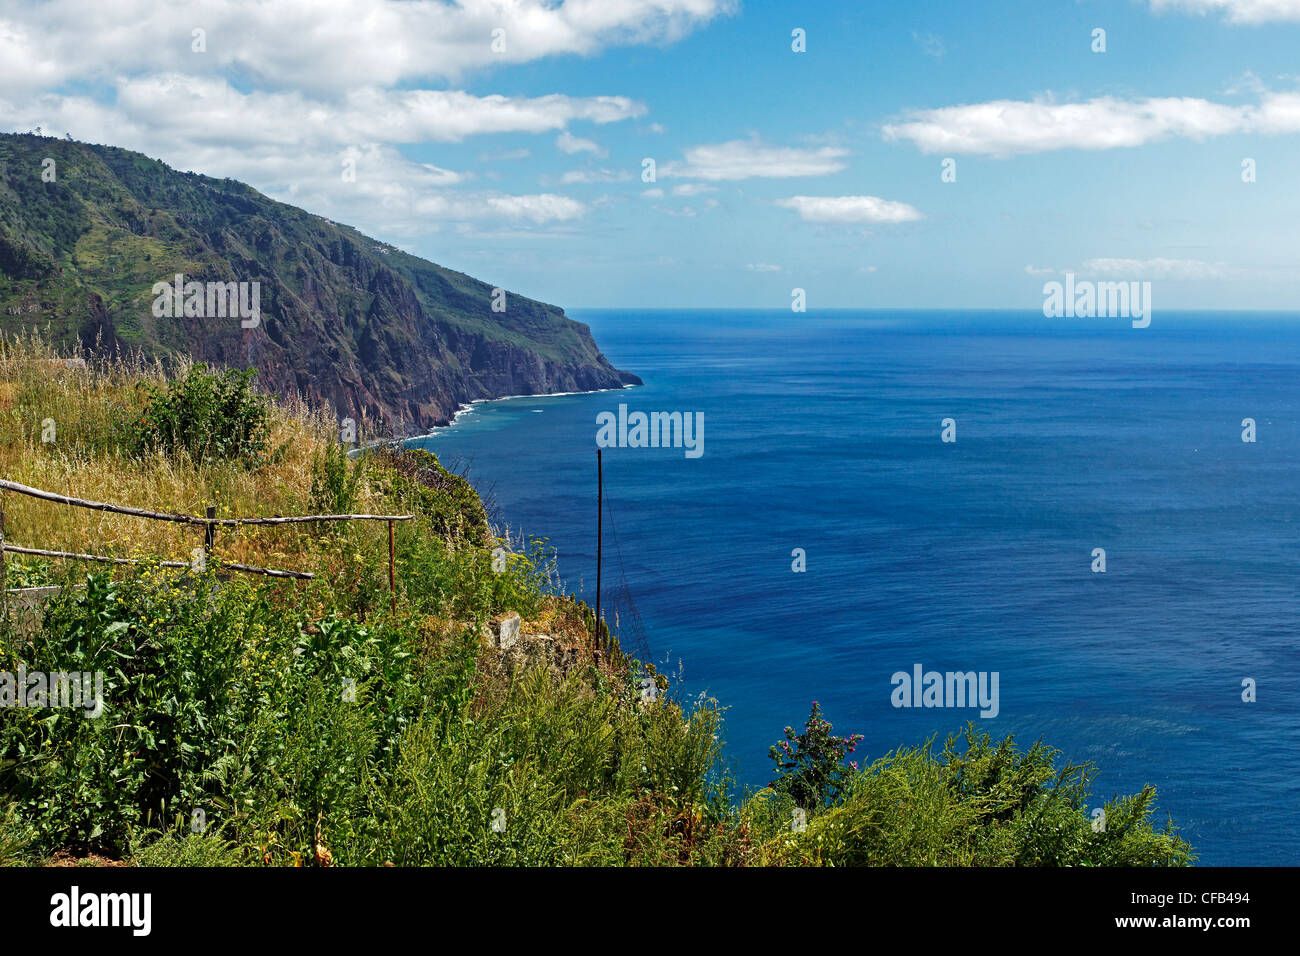 Europe, Portugal, Republica Portuguesa, Madeira, Ponta do Pargo, steep coast, sea, tourism, water, rock, cliff, mountains, sea, Stock Photo